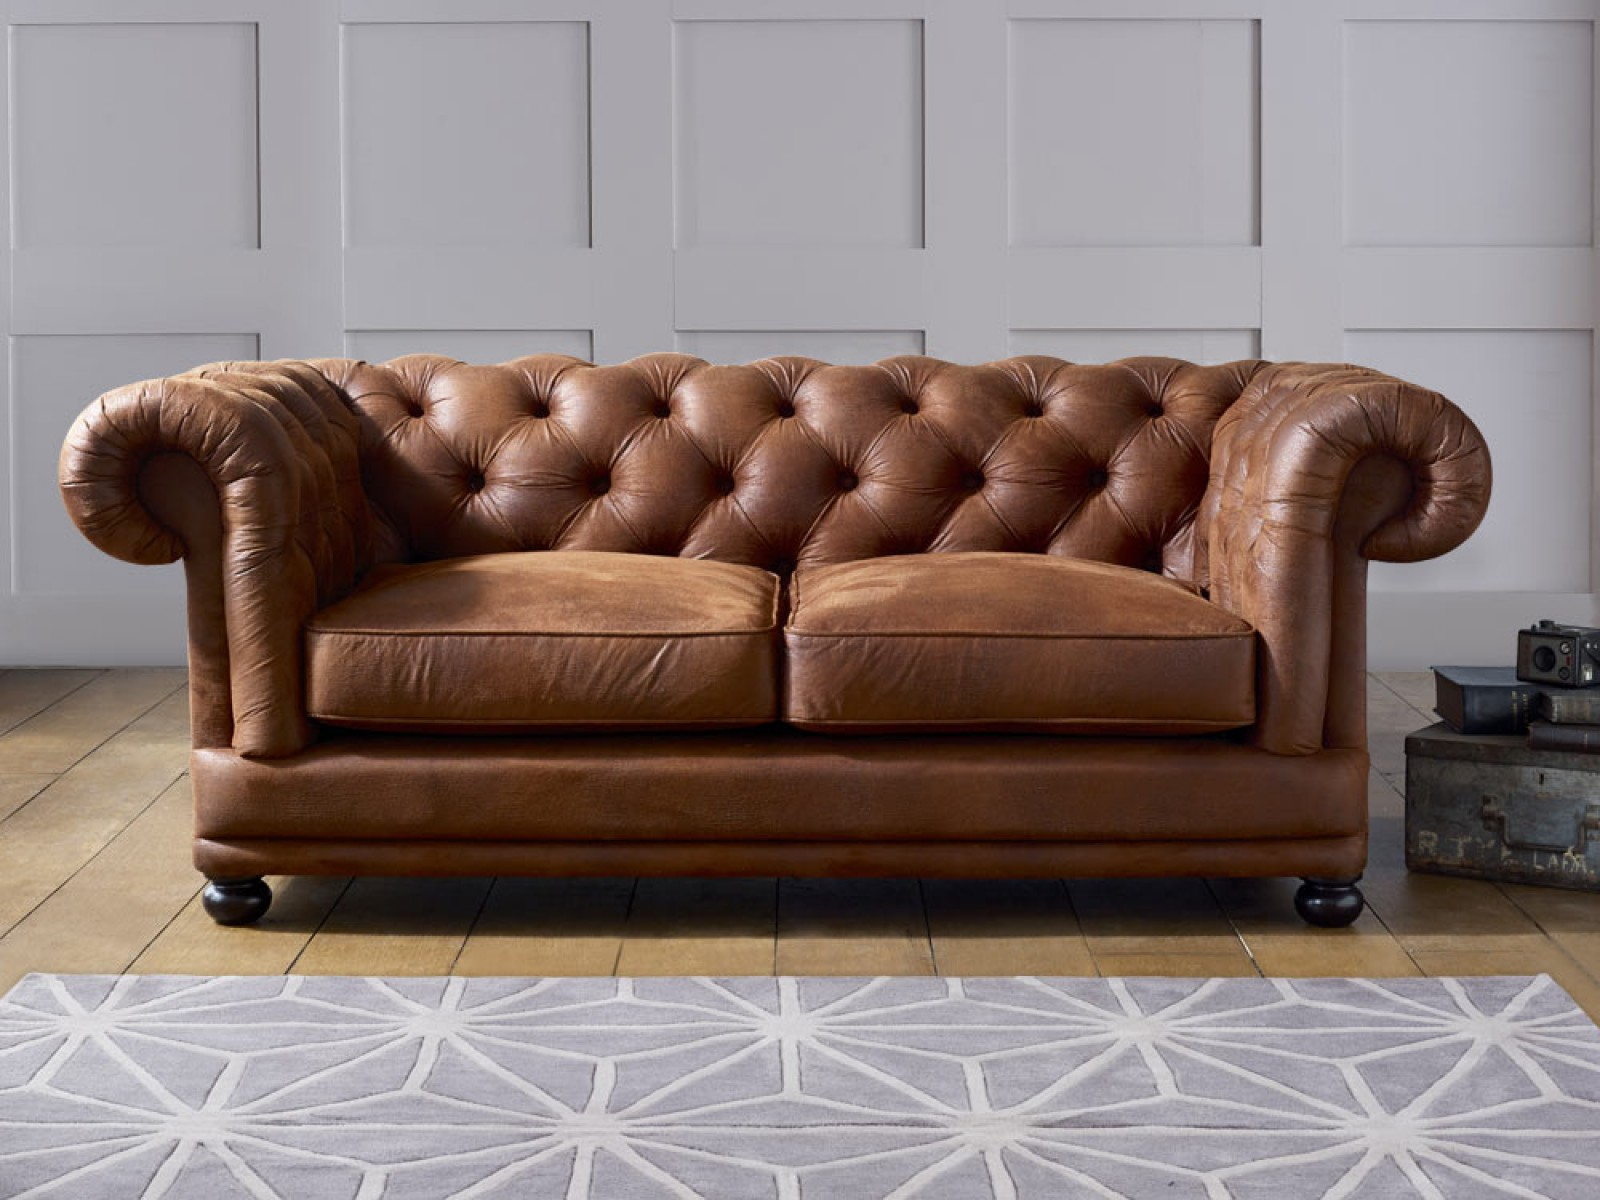 fake leather sofa peeling